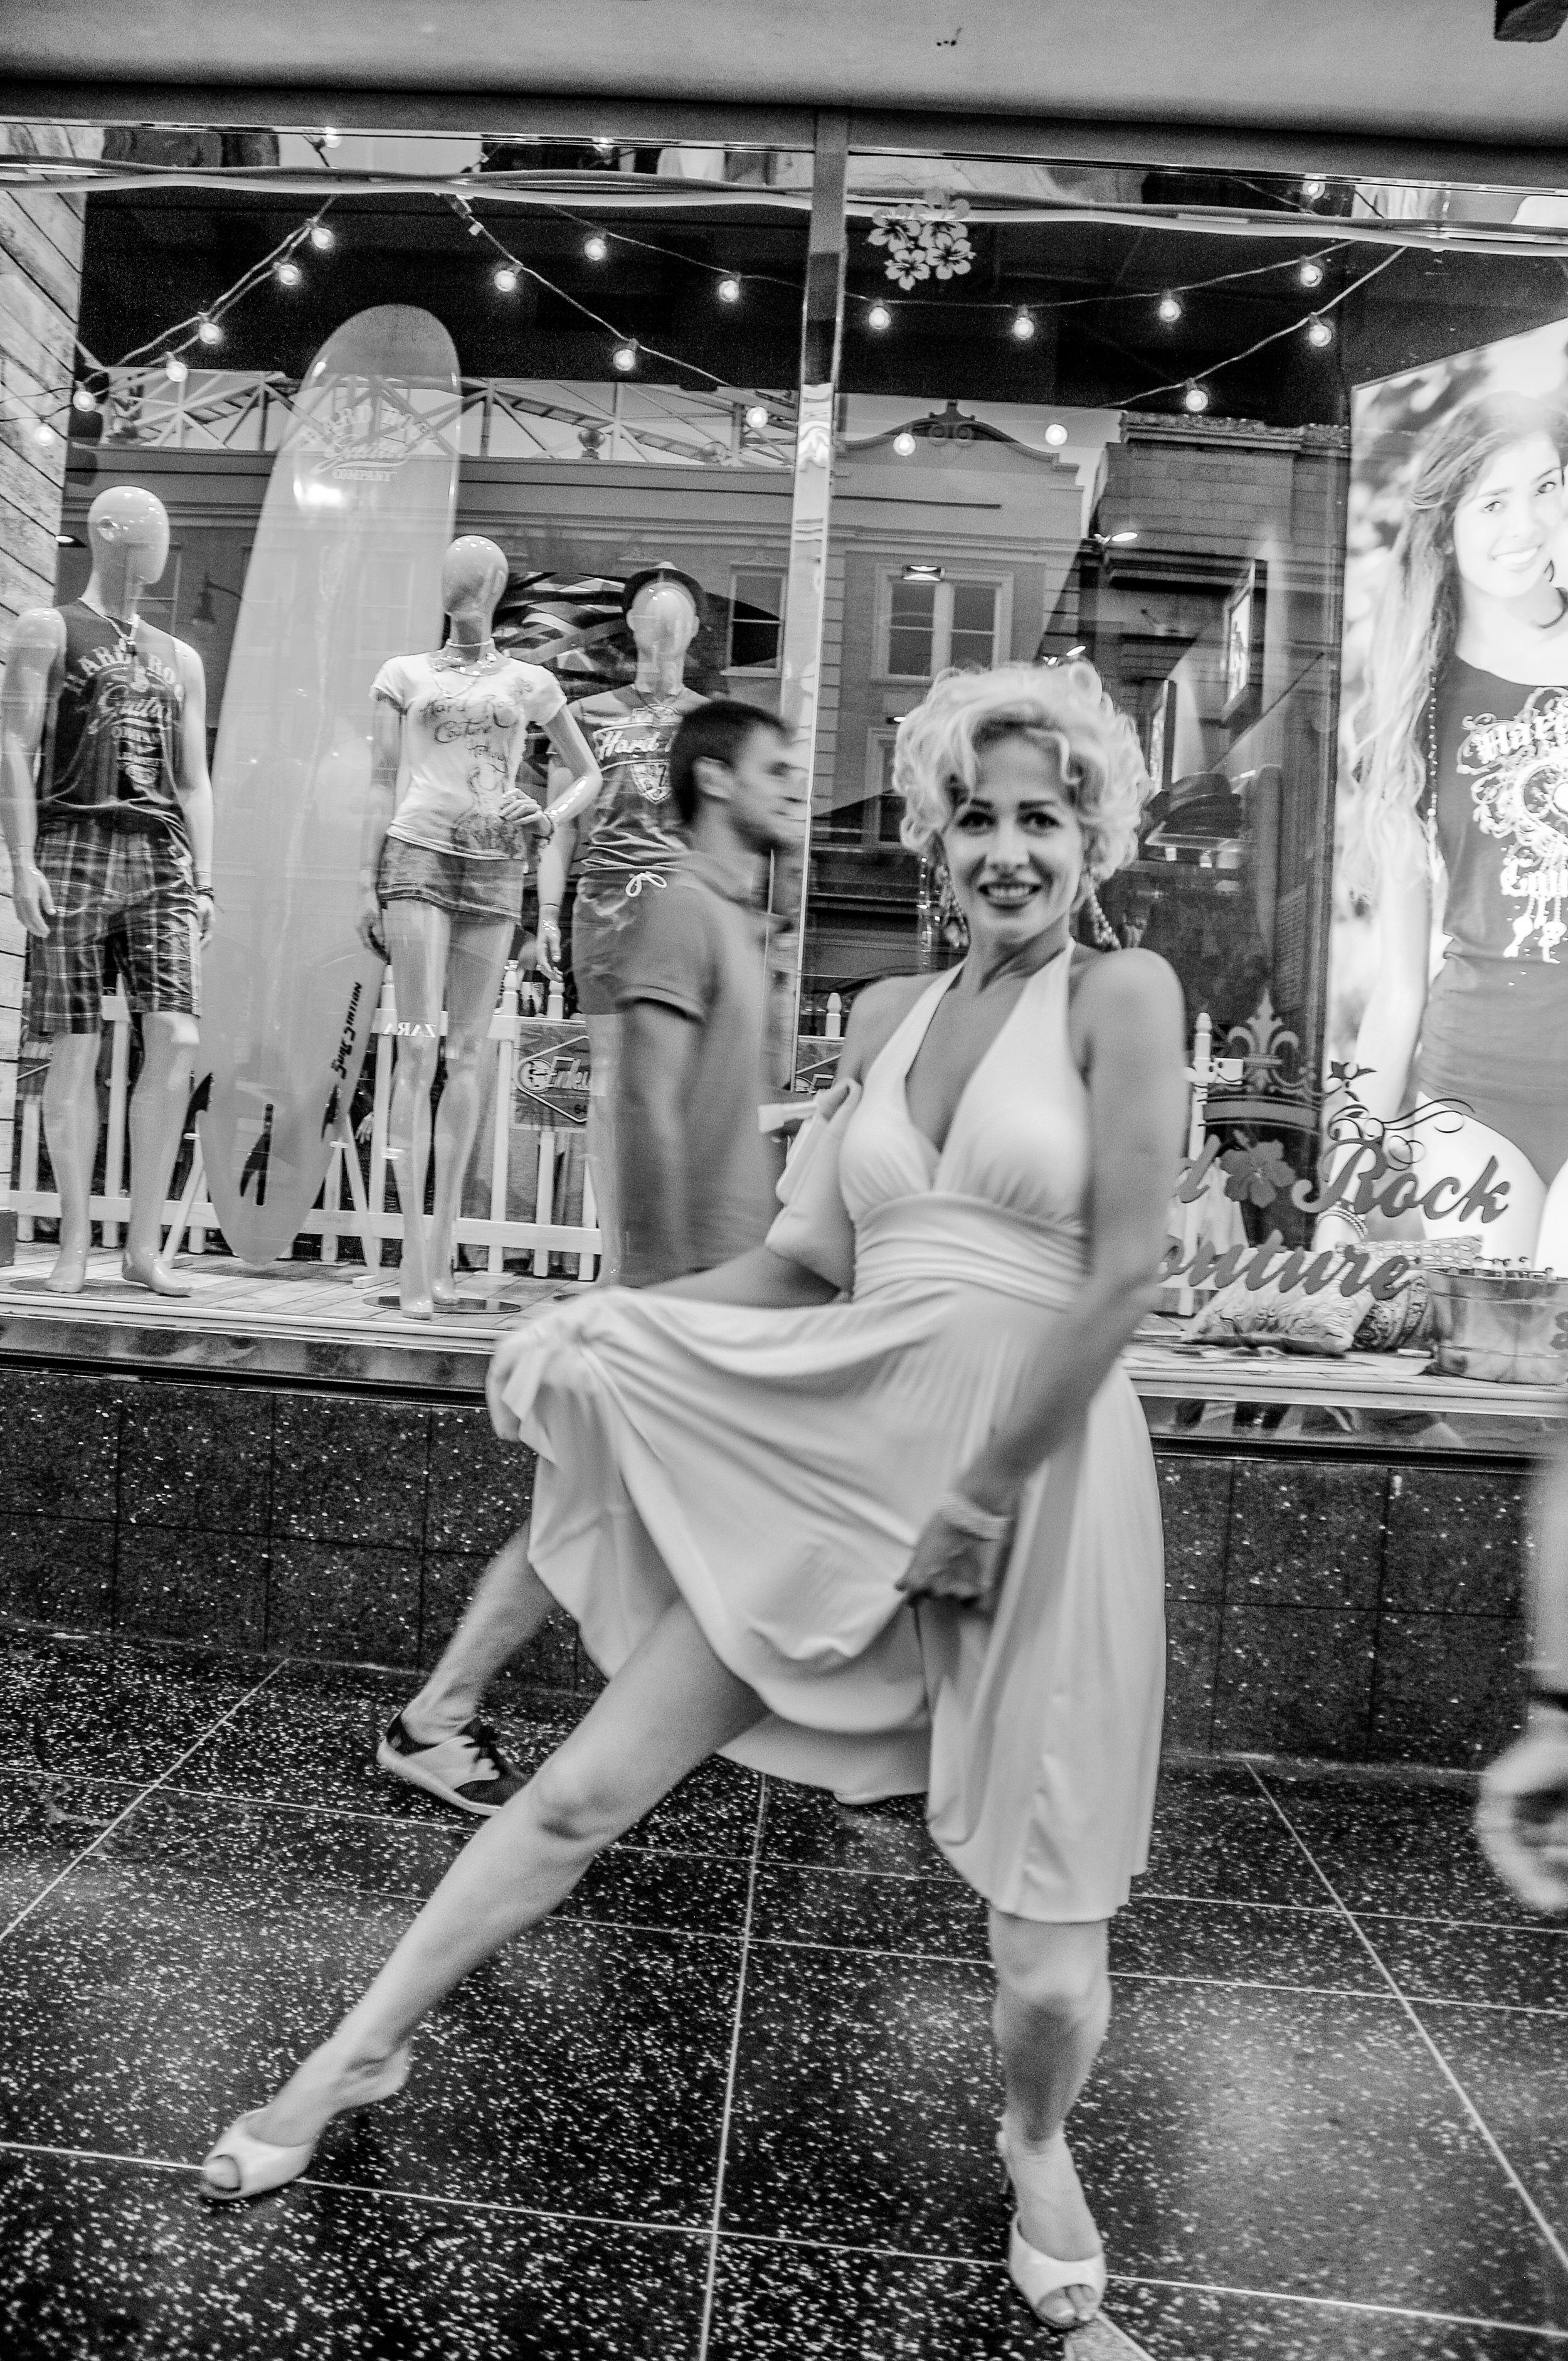 Marilyn Monroe Street Performer